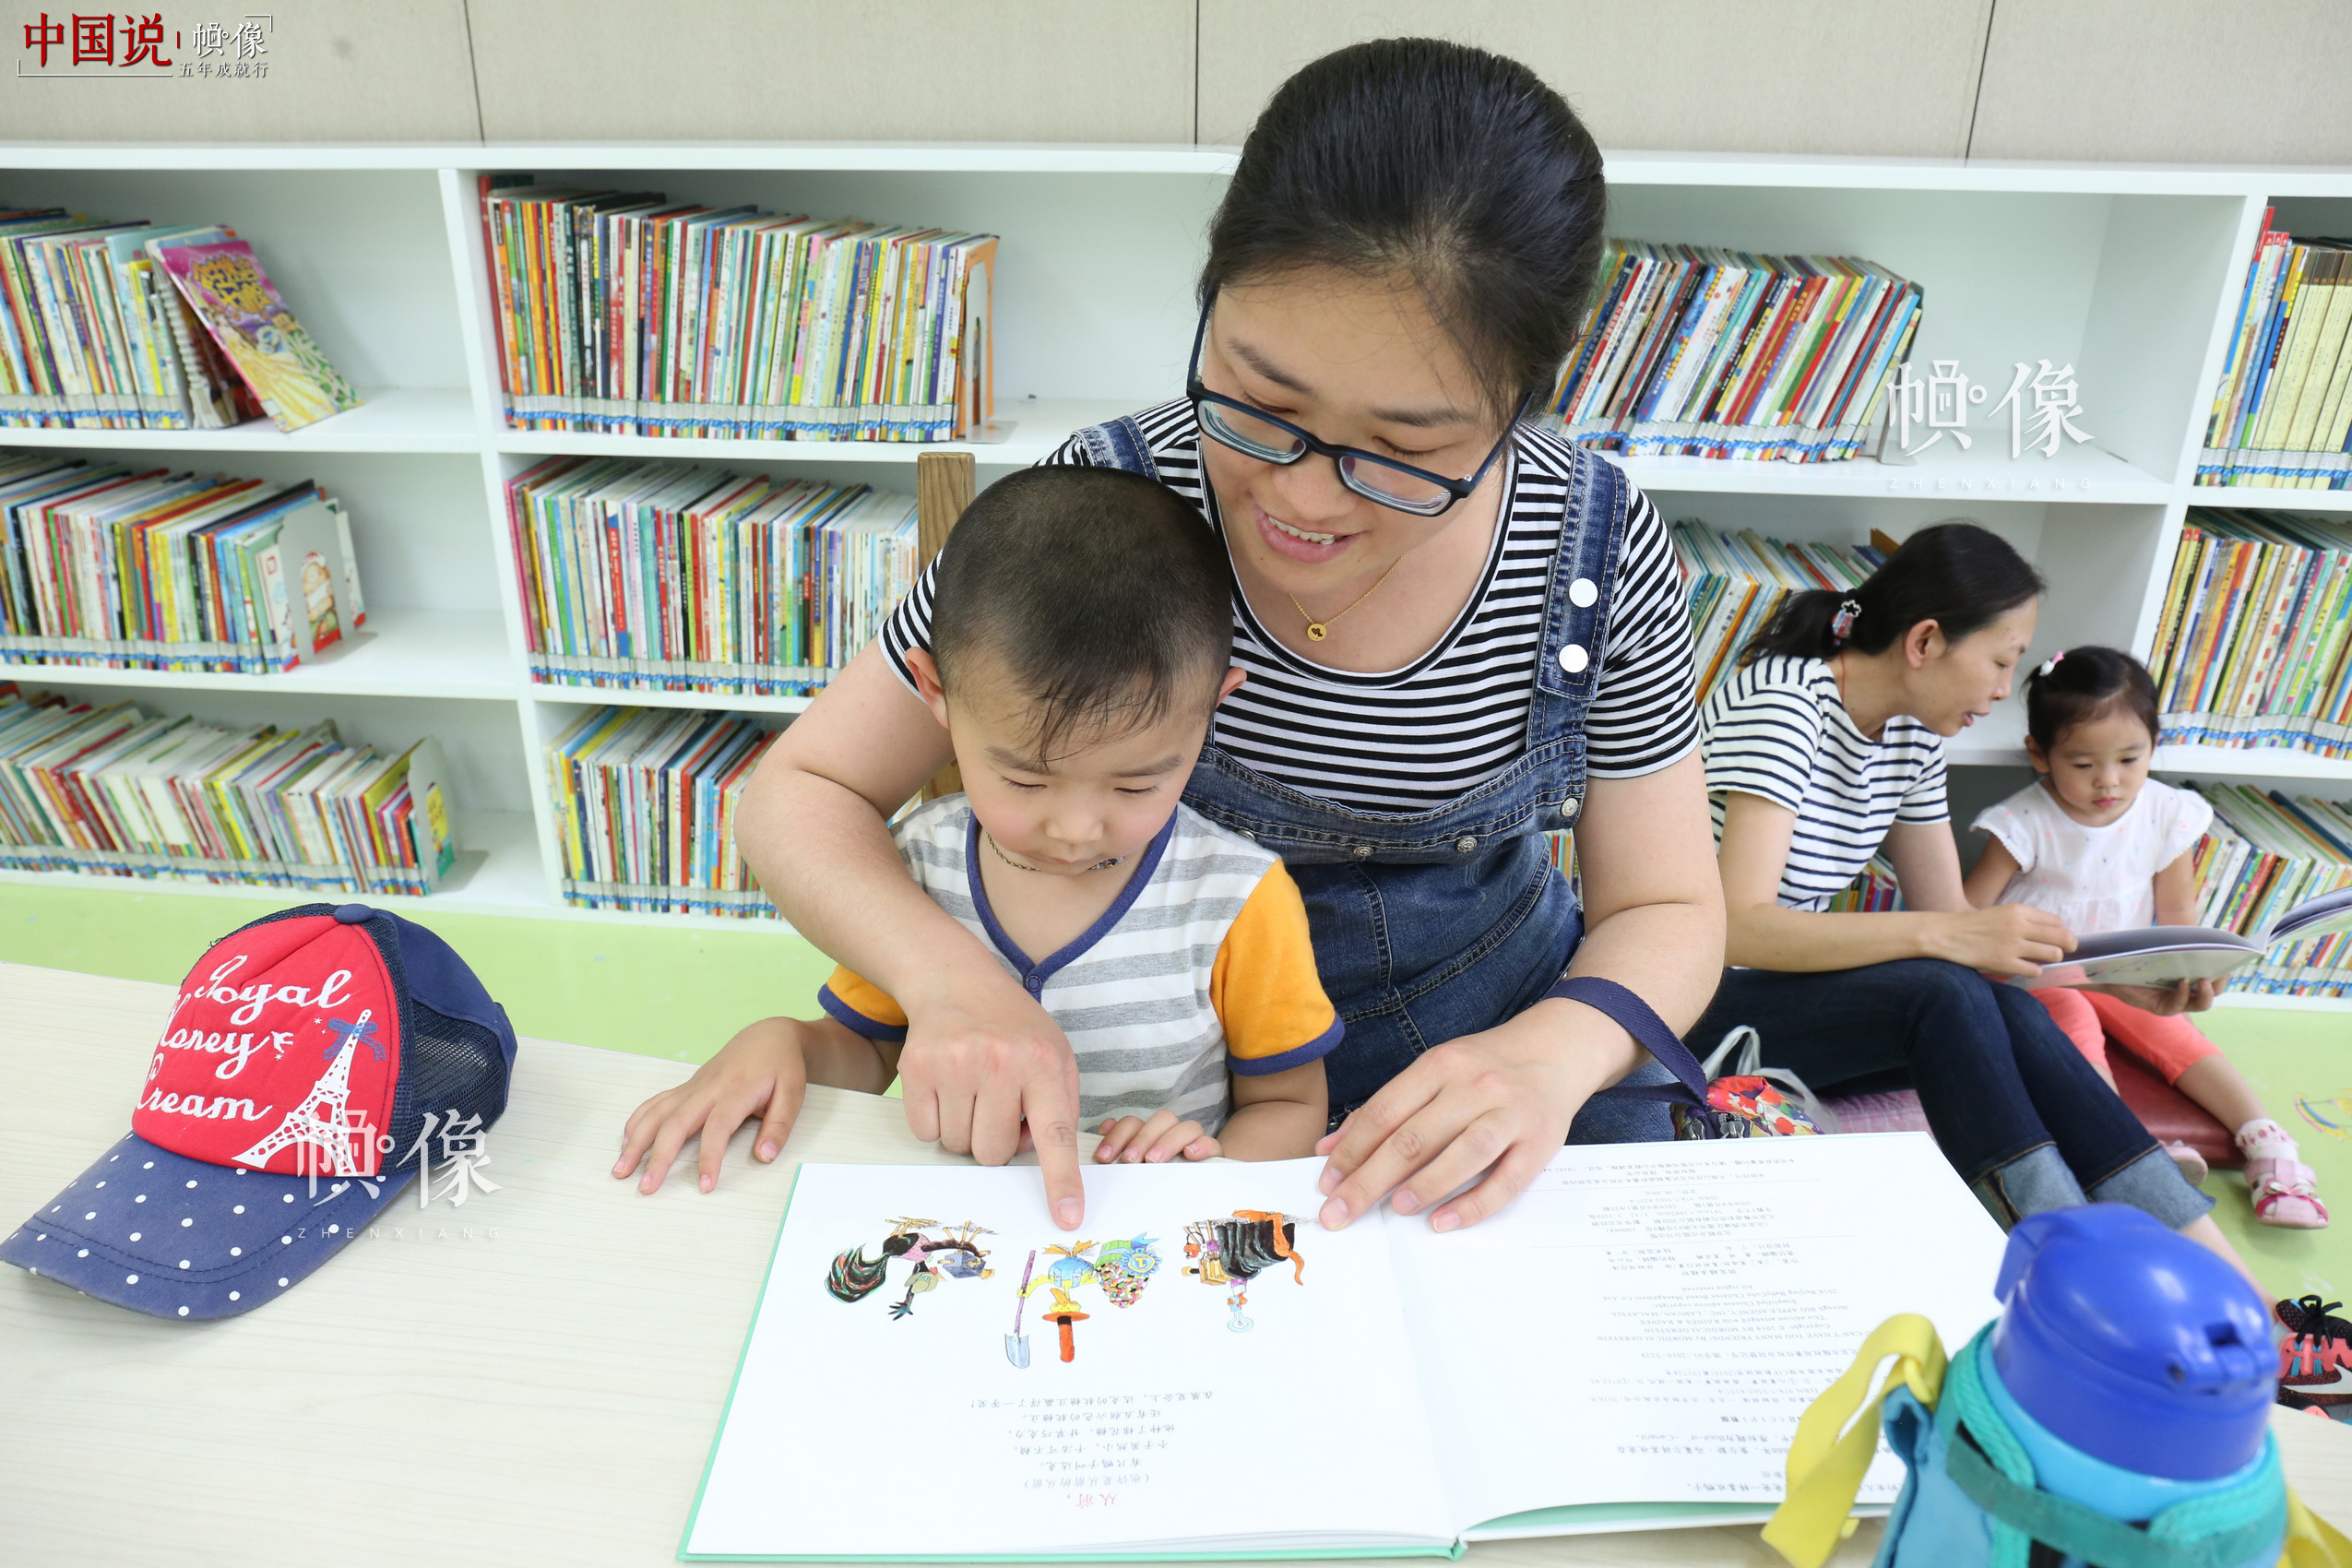 5月26日，北京国家图书馆，一位妈妈和儿子一起看书。 中国网记者 赵超 摄